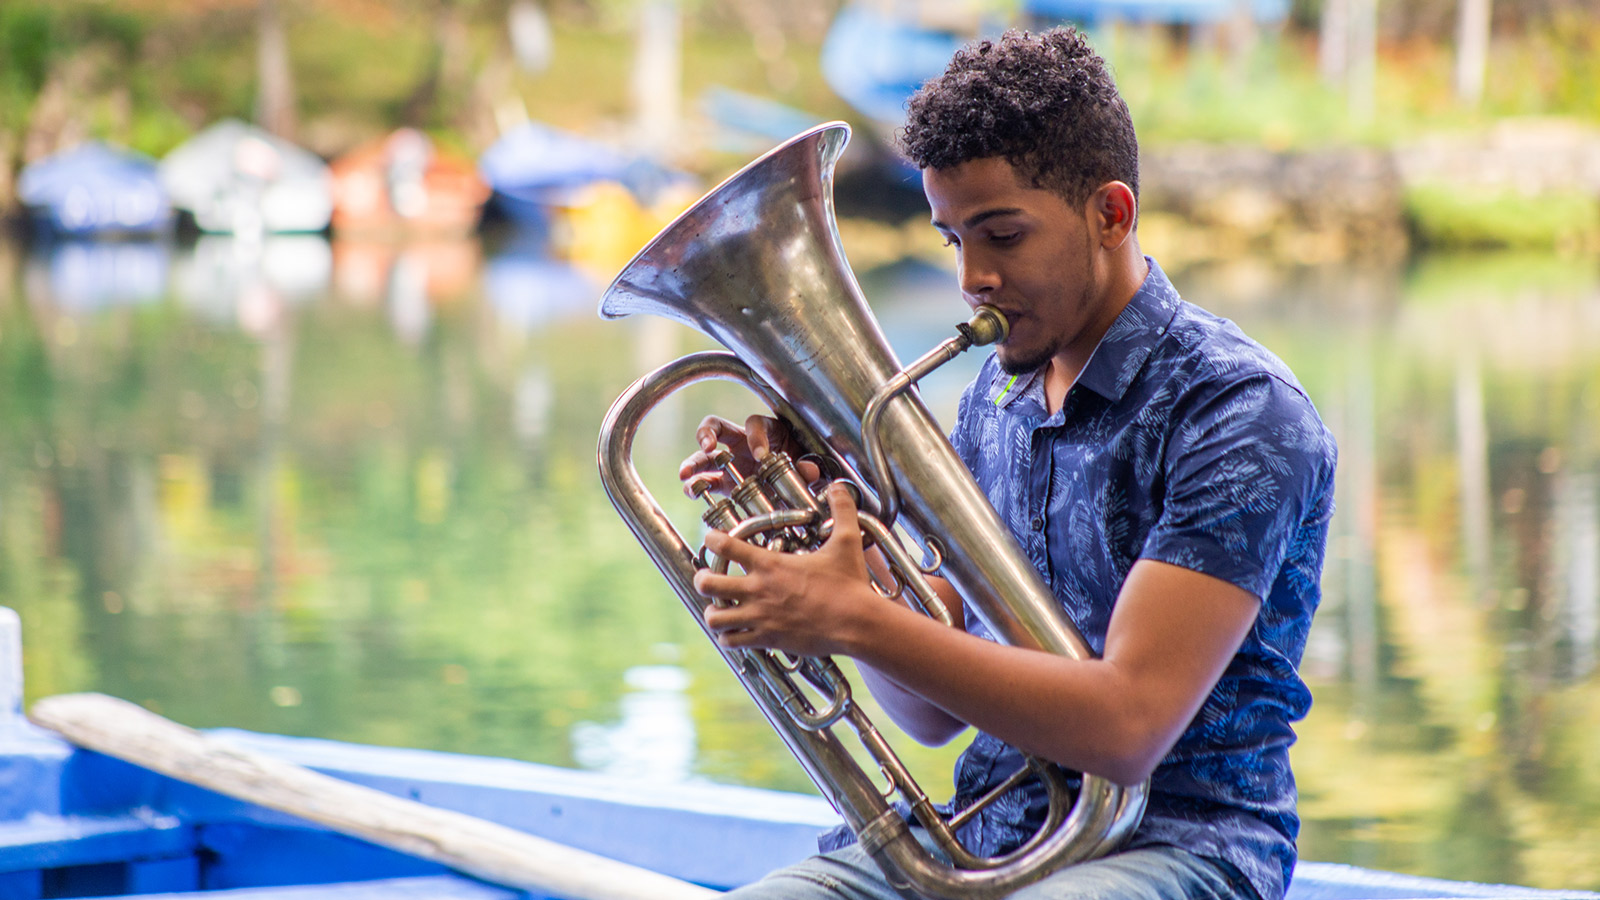 REPÚBLICA DOMINICANA: Escuelas Libres: La música me ha reformado